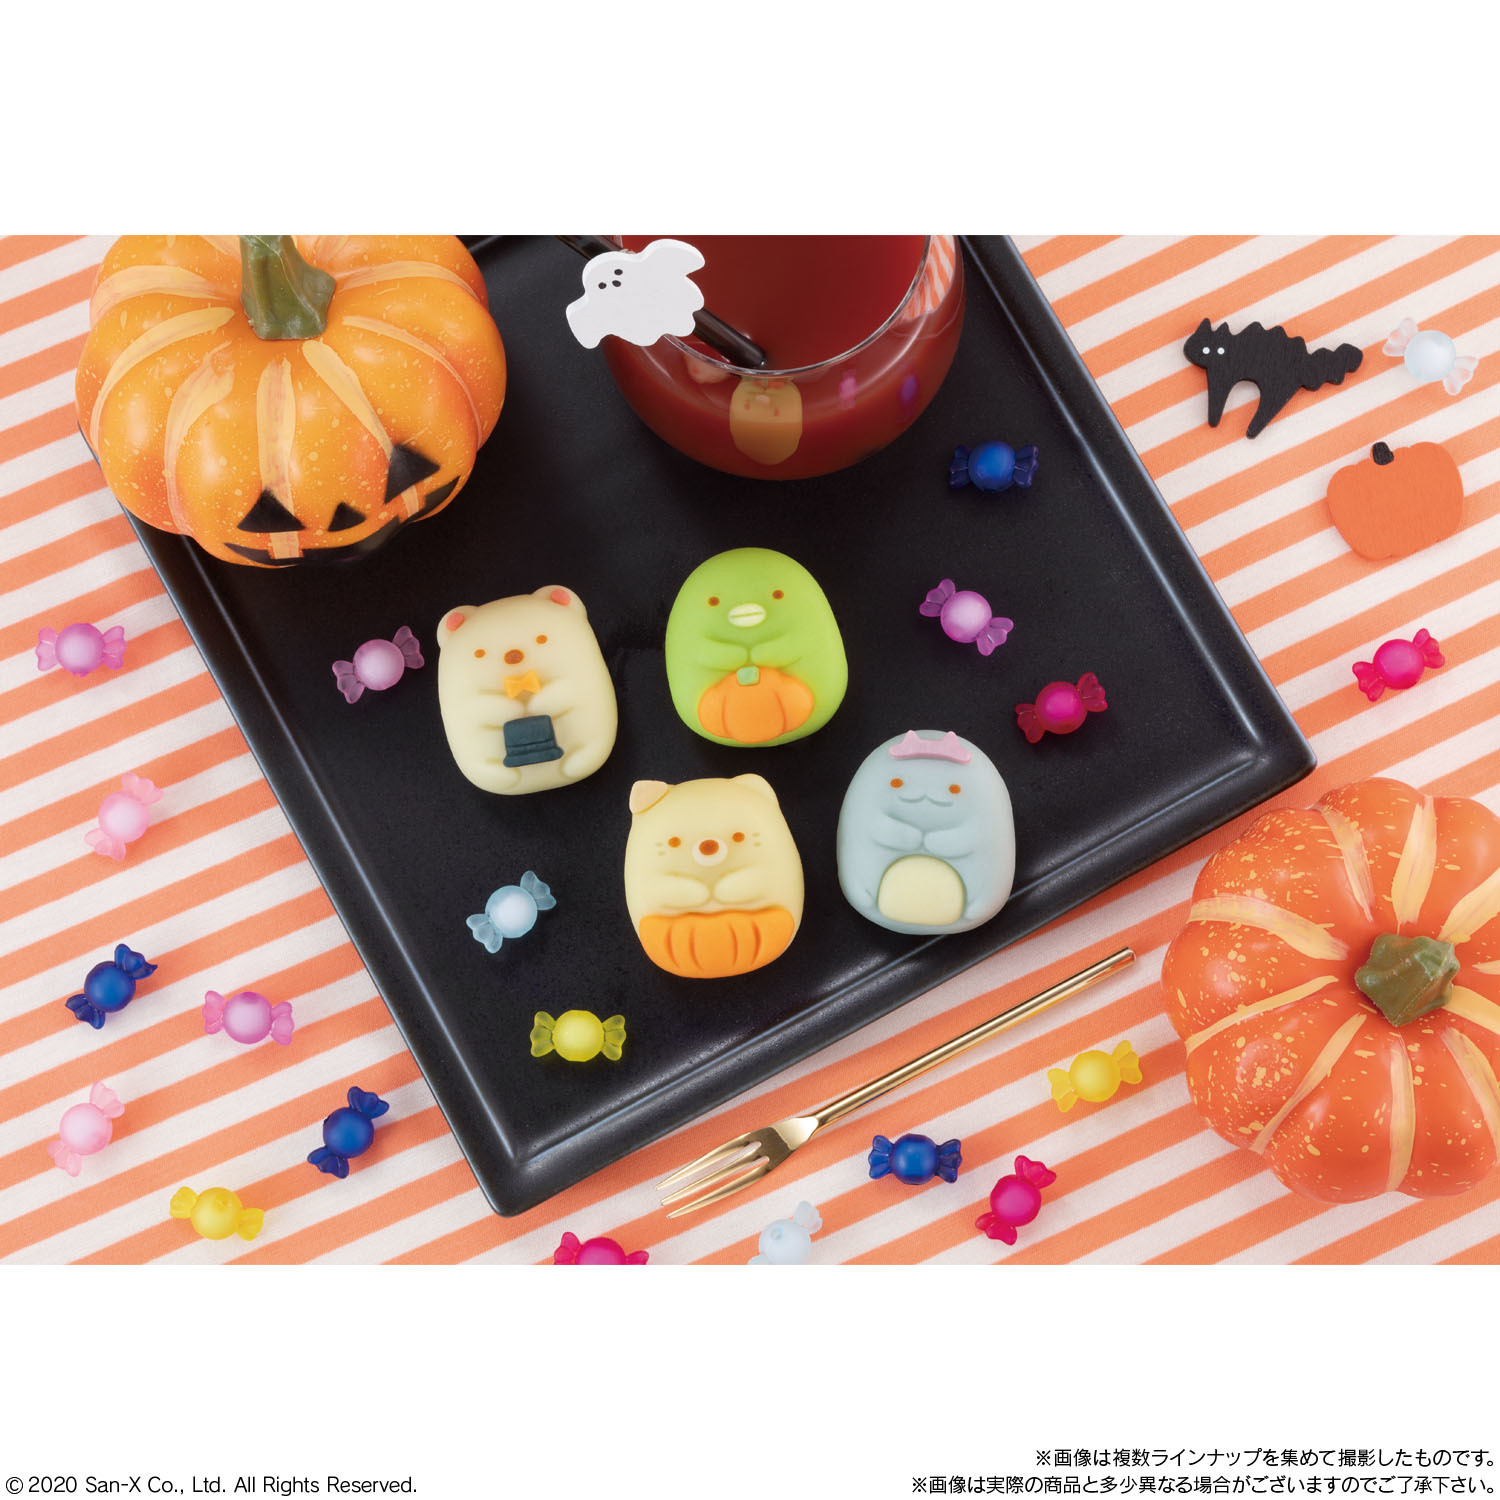 「すみっコぐらし」の和菓子がハロウィンをイメージした装いに🎃💙10月6日発売🌈